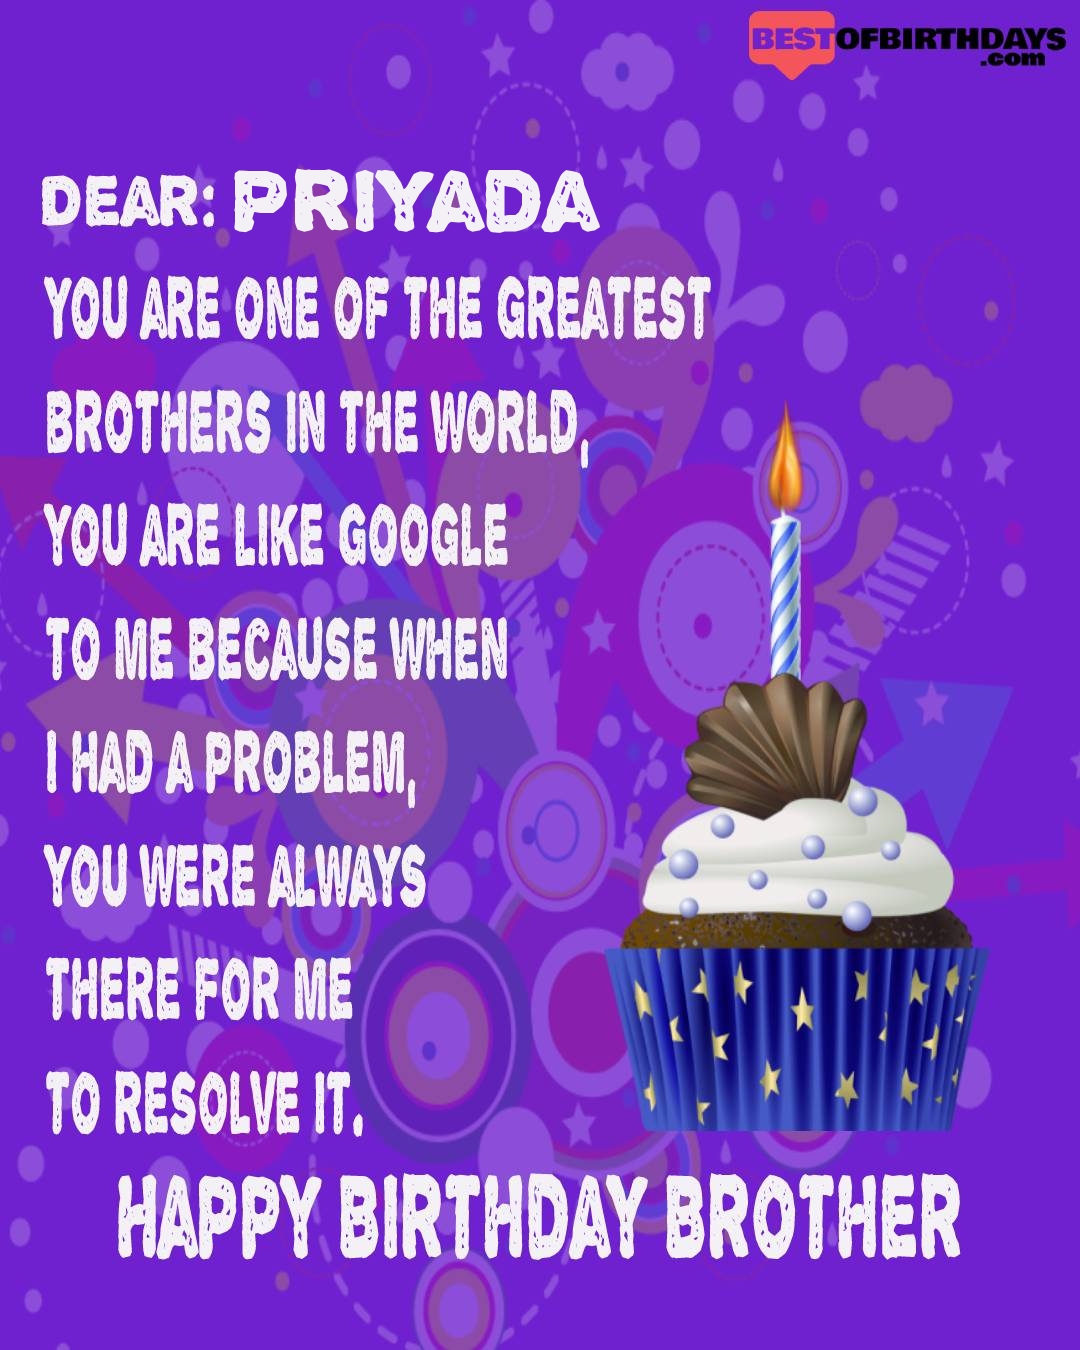 Happy birthday priyada bhai brother bro